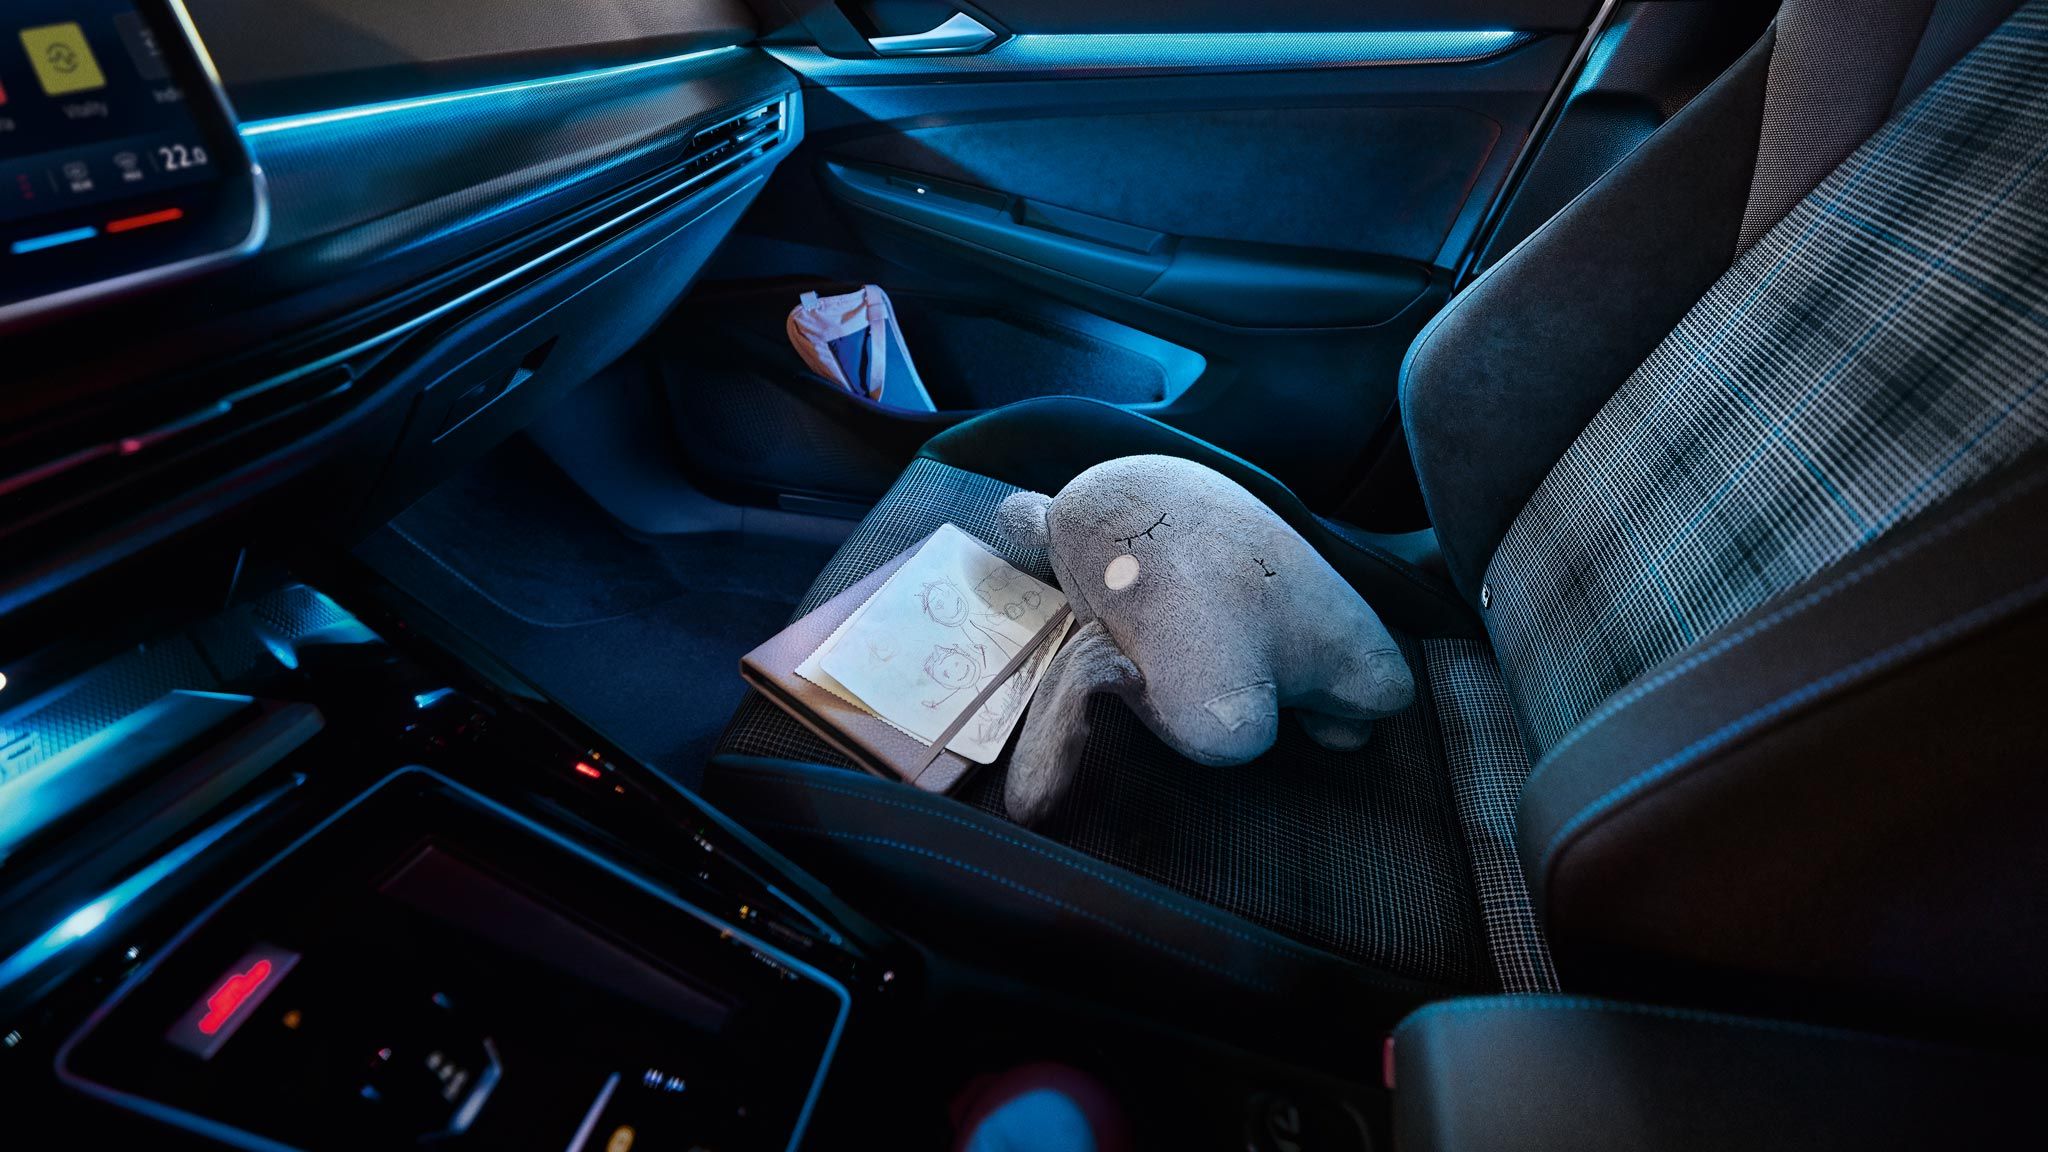 Ambientebeleuchtung im VW Golf GTE bei Nacht